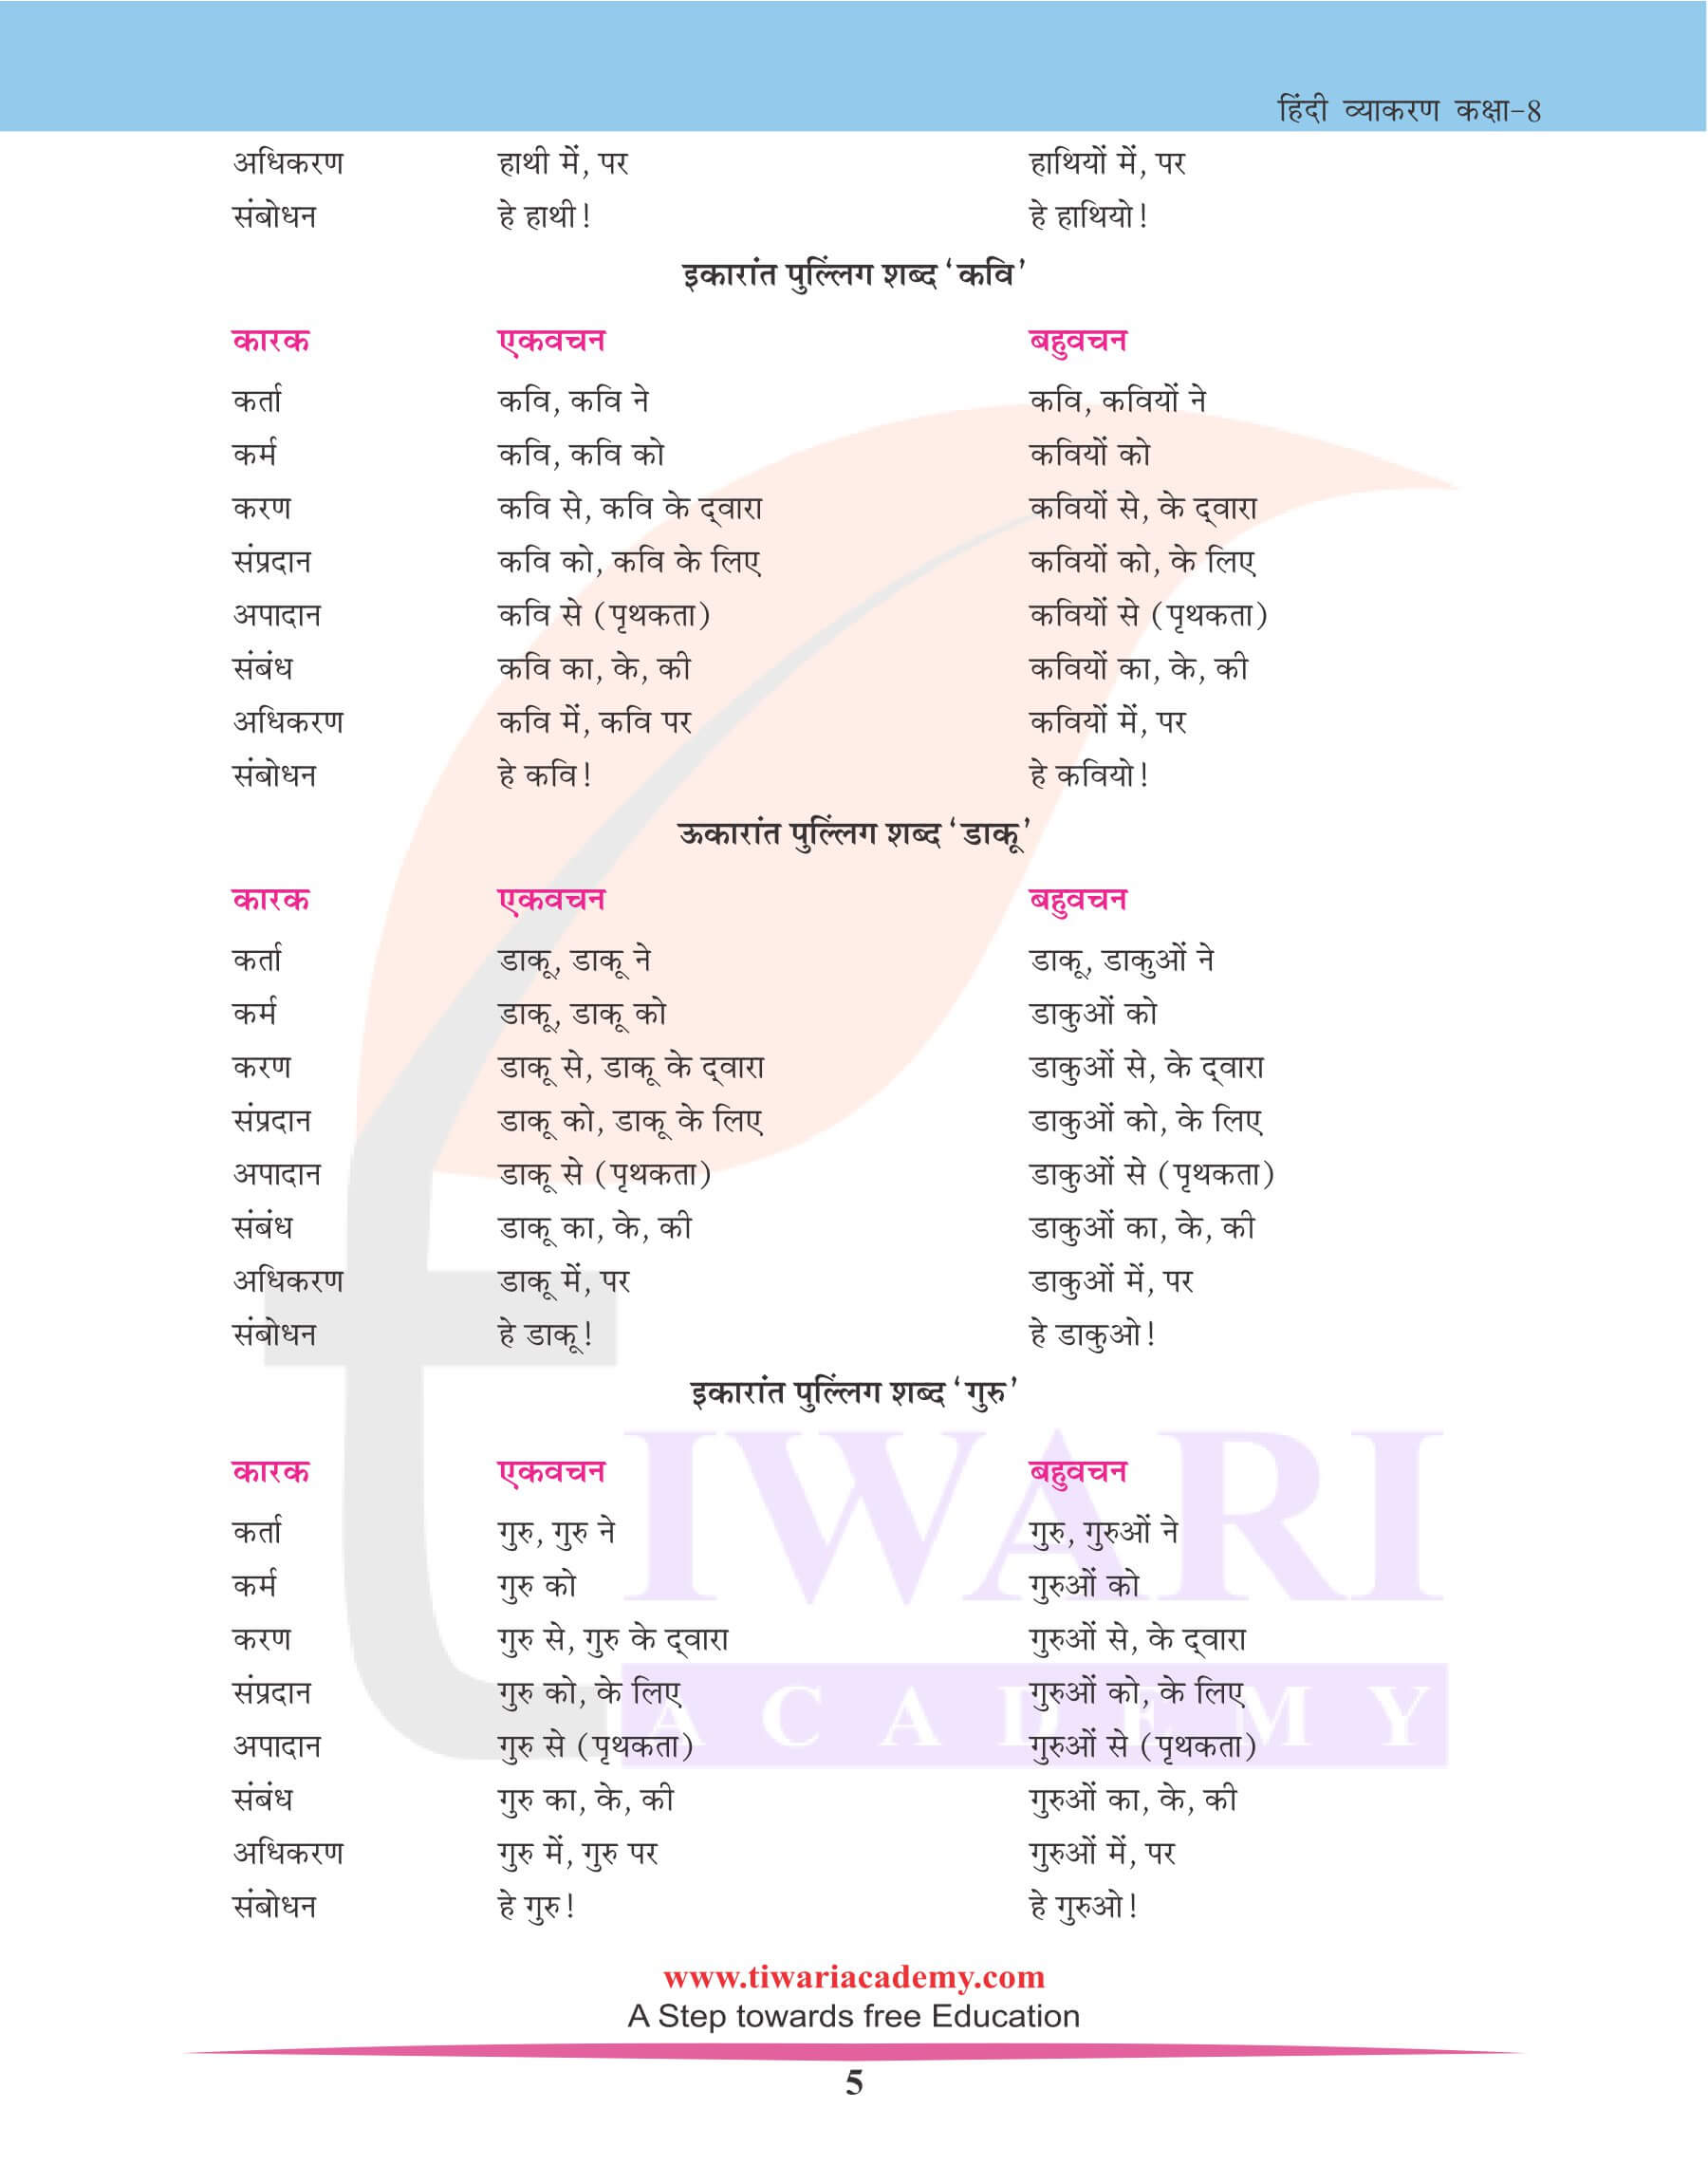 कक्षा 8 हिंदी व्याकरण कारक के भेद और चिन्ह